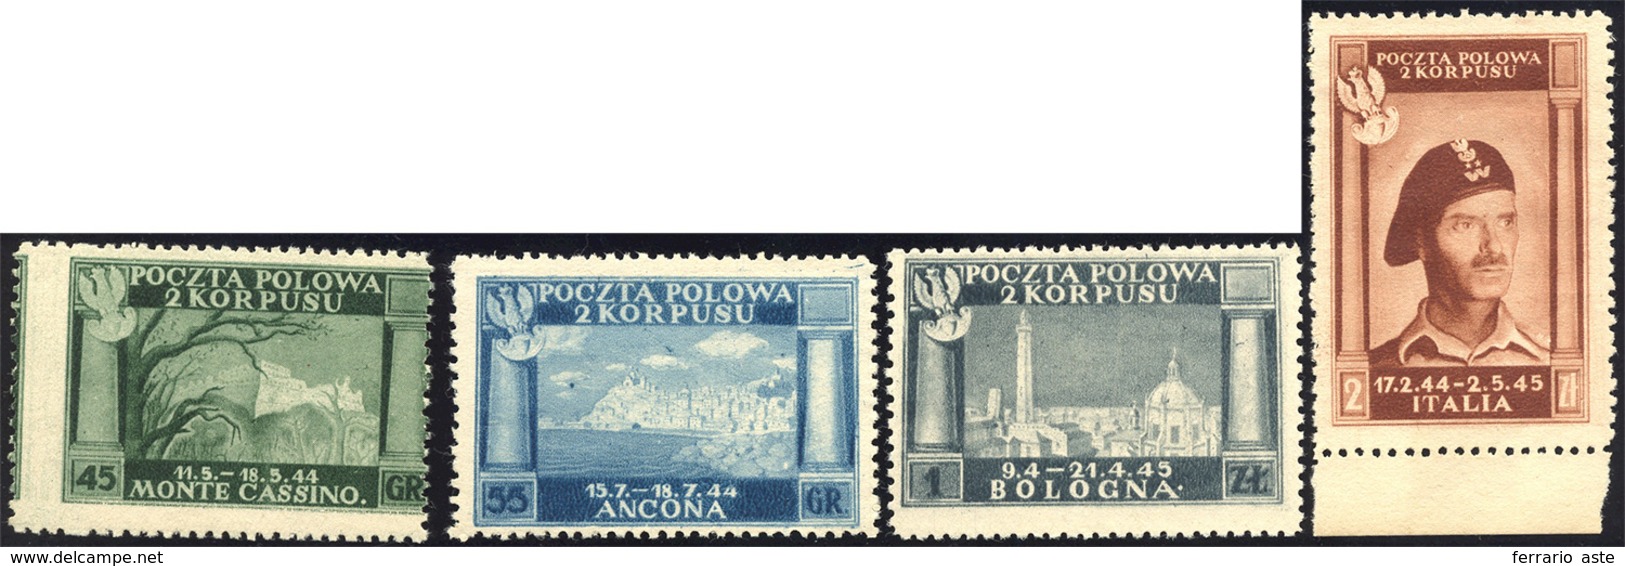 1538 1946 - Vittorie Polacche, Carta Bianca (5/8), Senza Gomma Come Sempre, Perfetti.... - 1946-47 Período Del Corpo Polacco